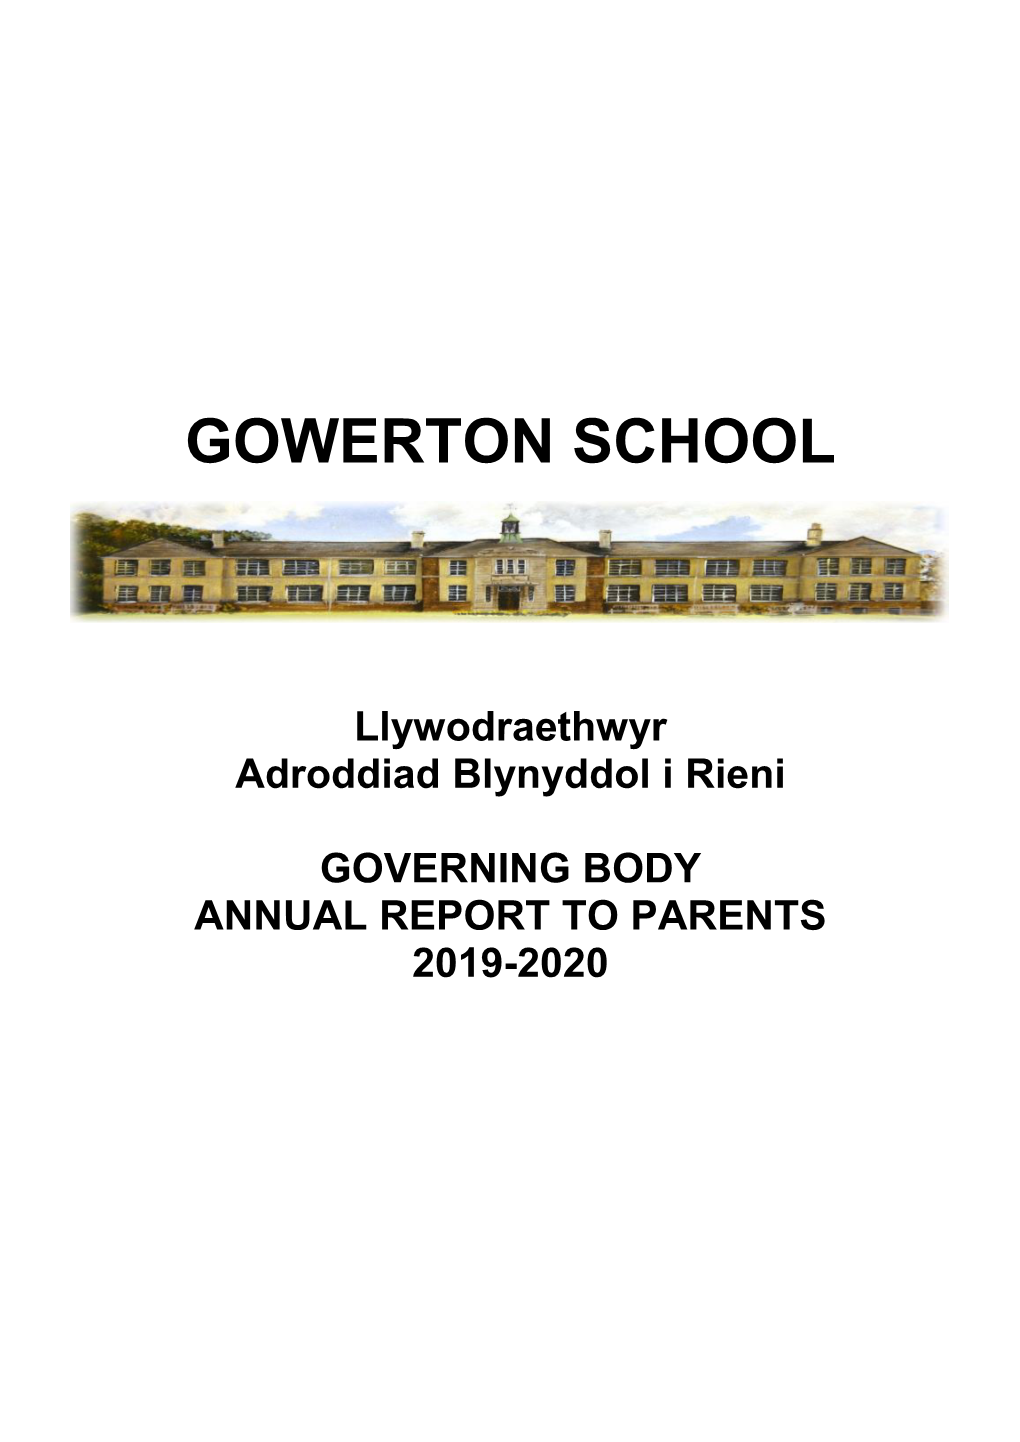 Gowerton School